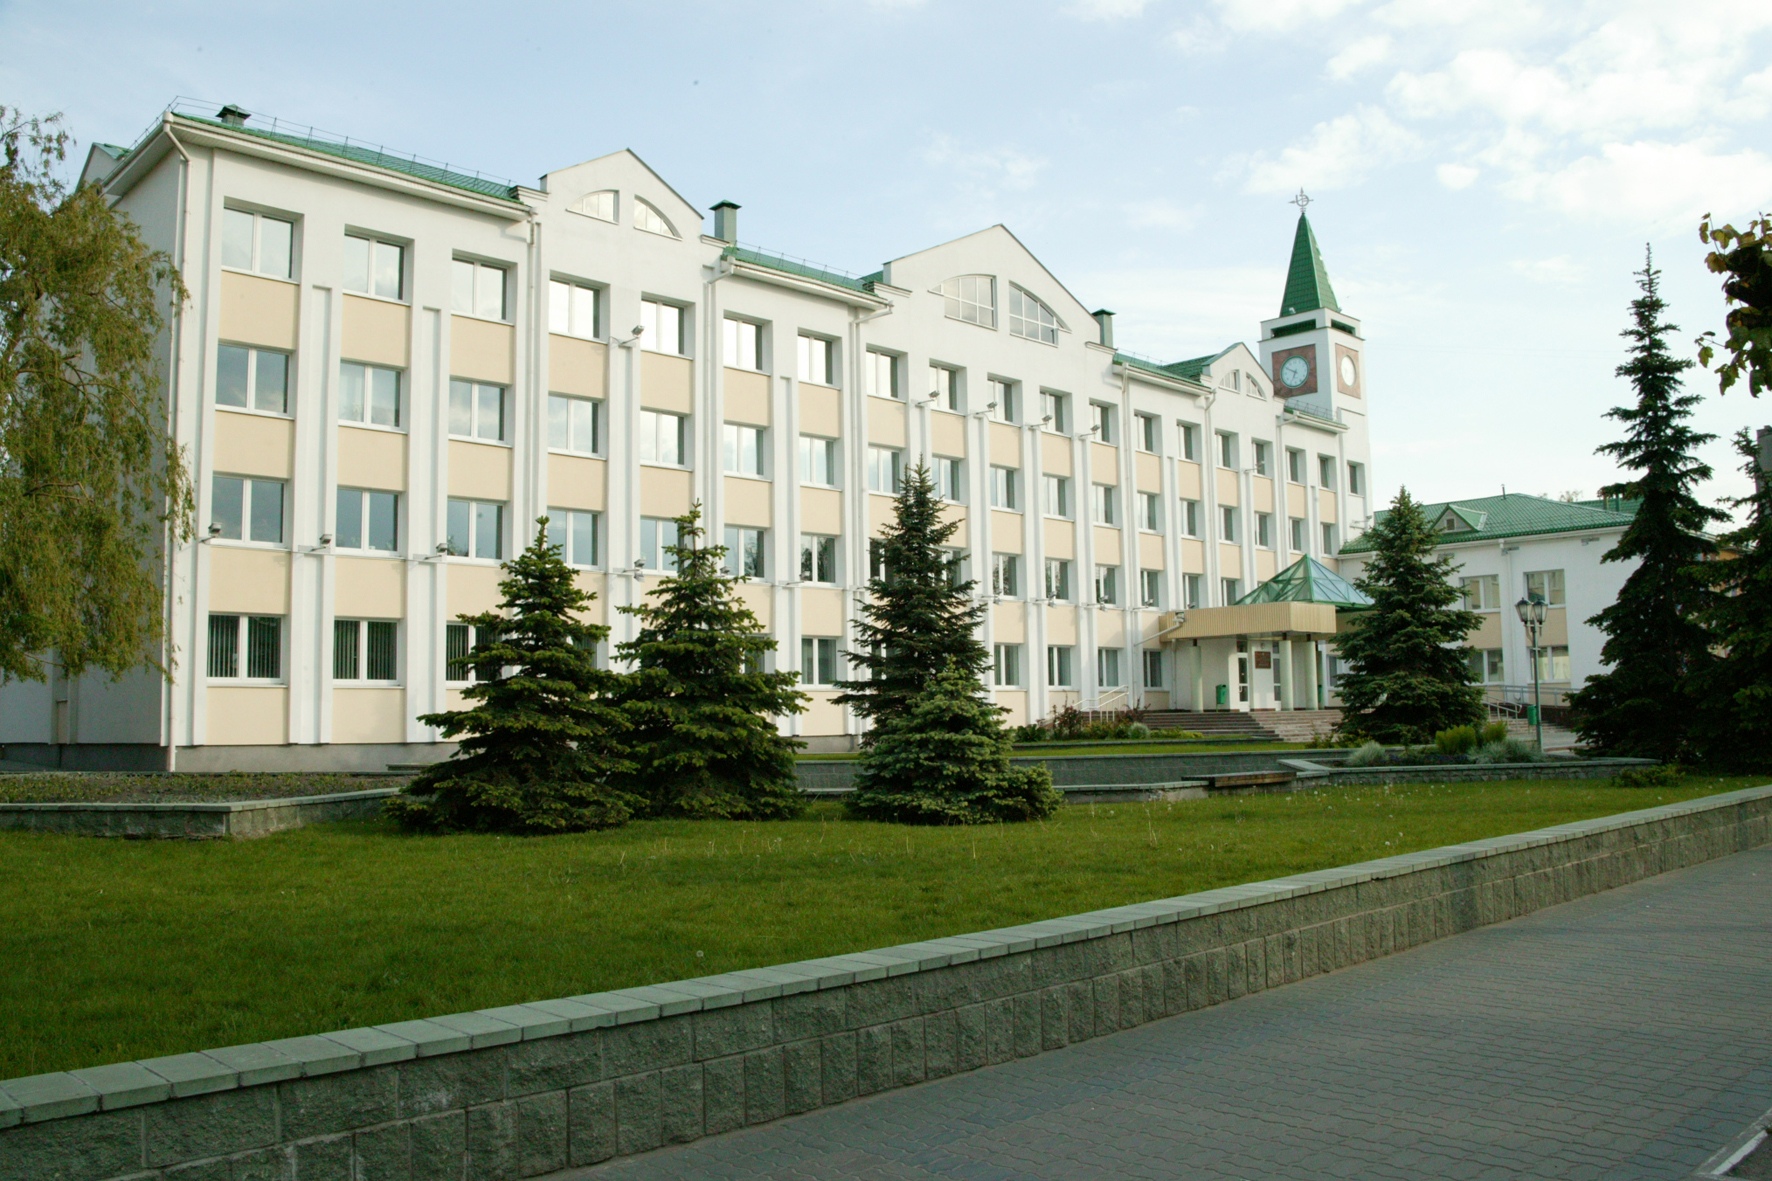 Polessky State University